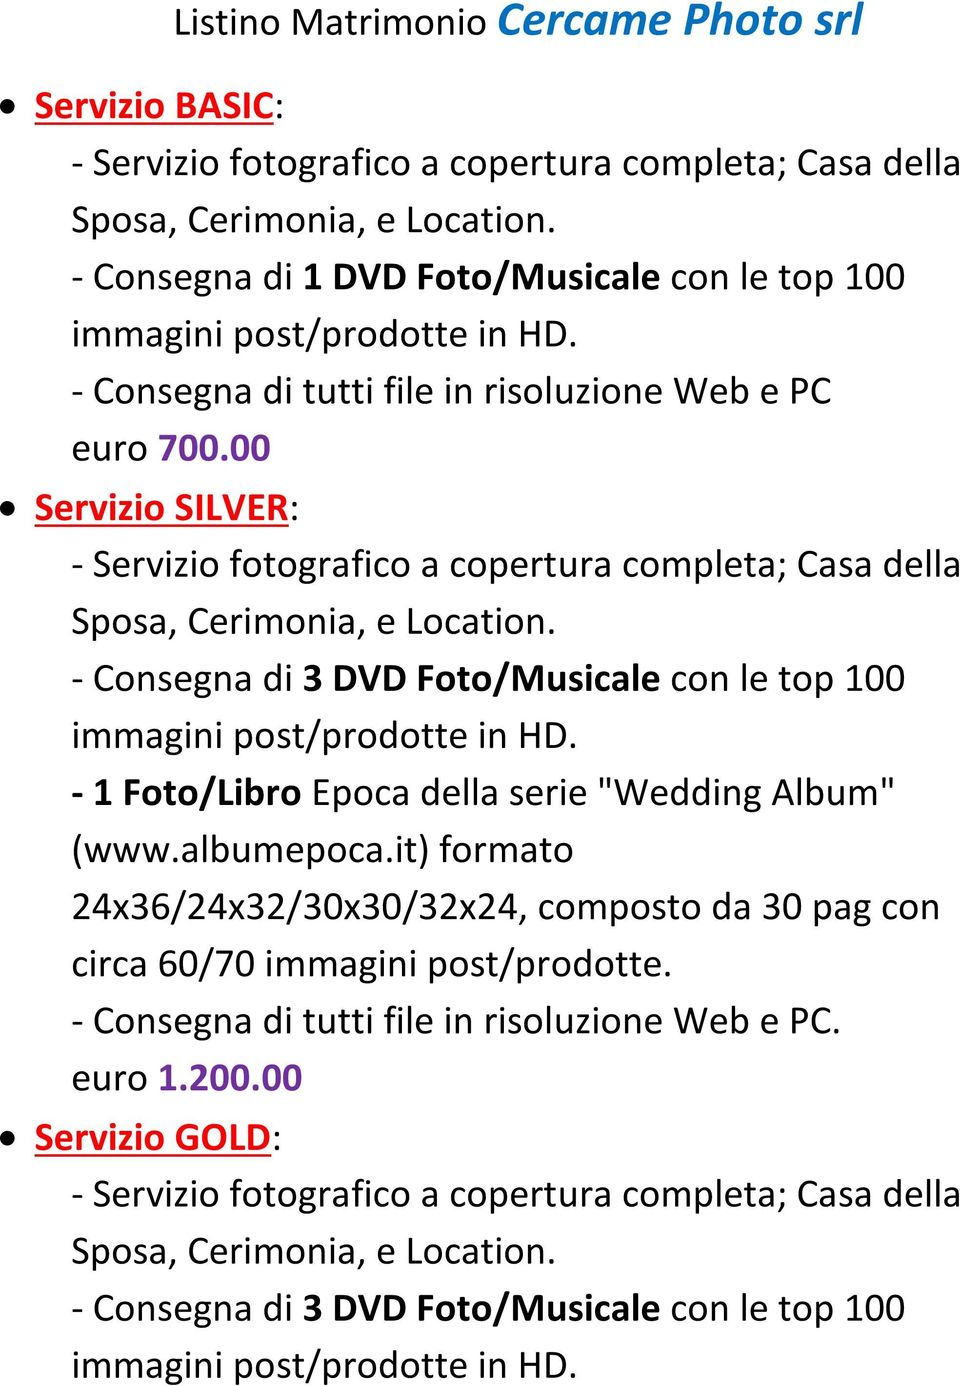 00 Servizio SILVER: - Consegna di 3 DVD Foto/Musicale con le top 100-1 Foto/Libro Epoca della serie "Wedding Album"